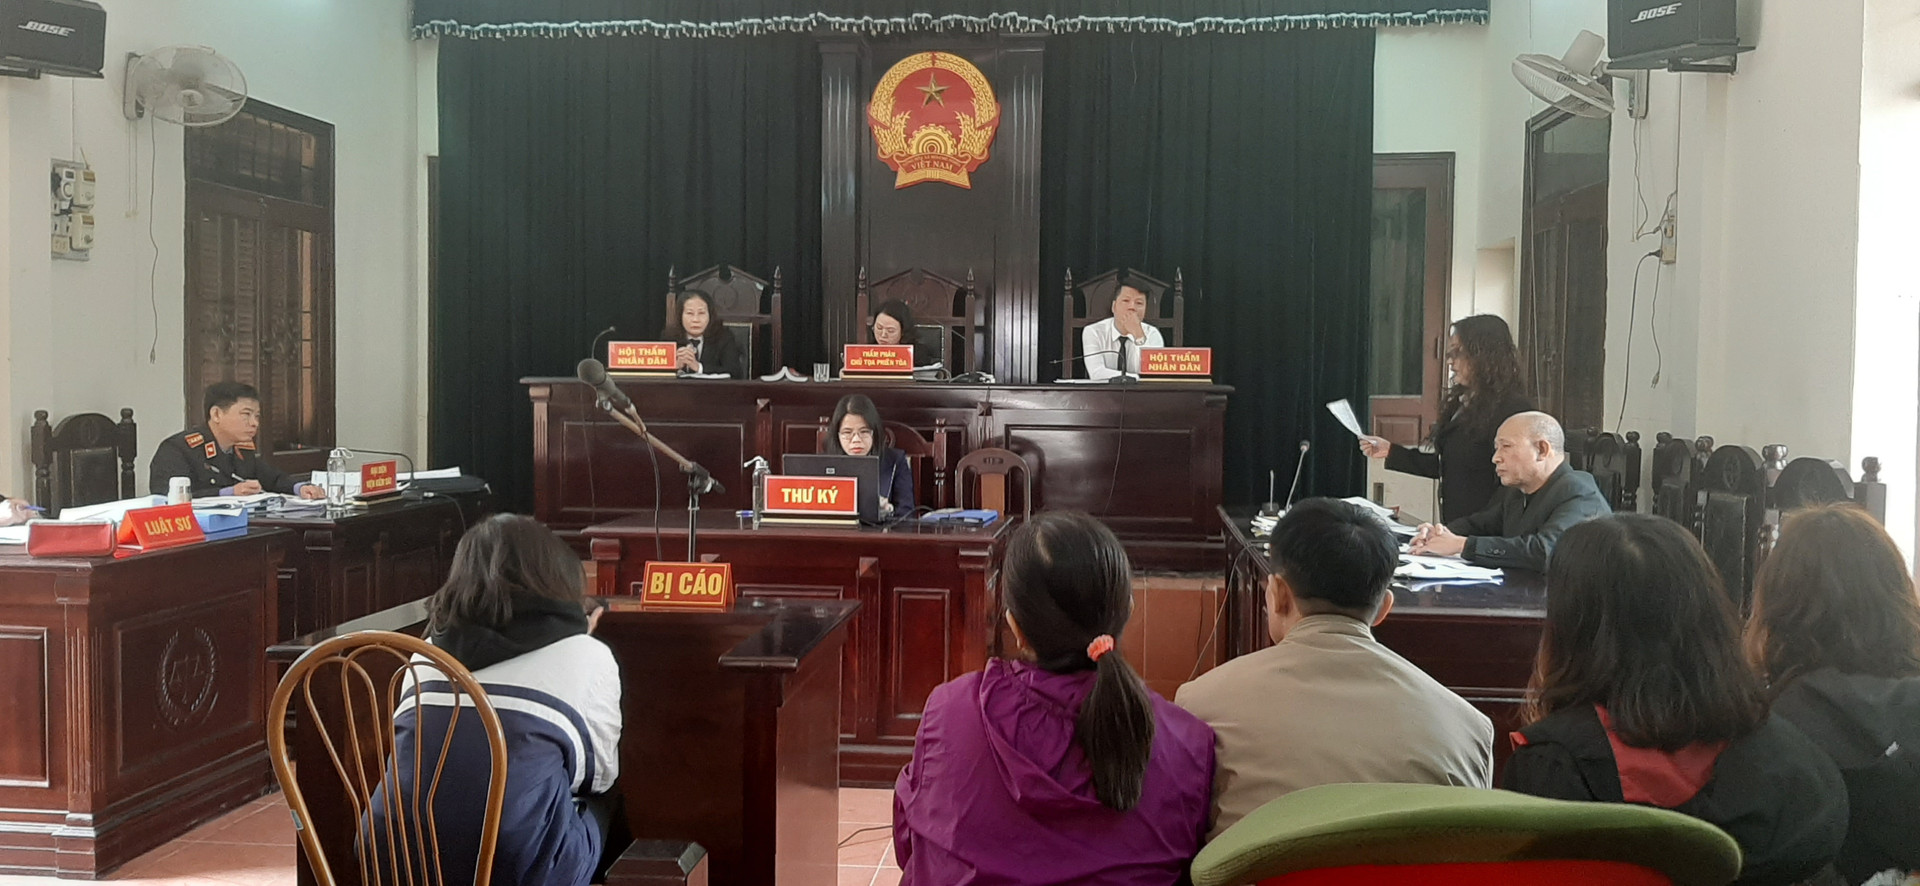 Vụ học sinh đánh nhau ở Hà Nội: Tòa trả hồ sơ, yêu cầu điều tra bổ sung